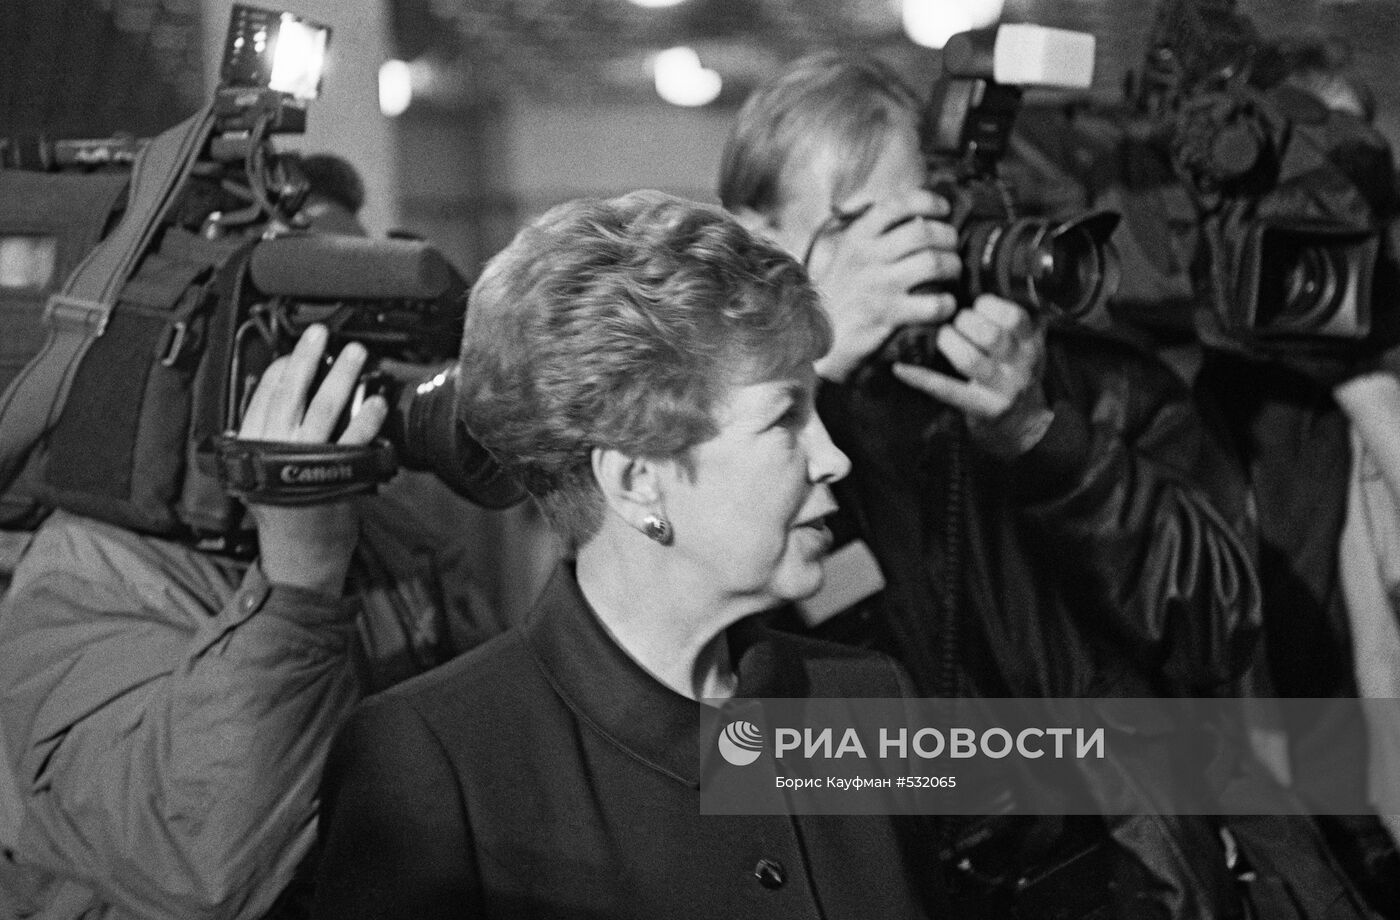 Раиса Горбачева в окружении фотокорреспондентов